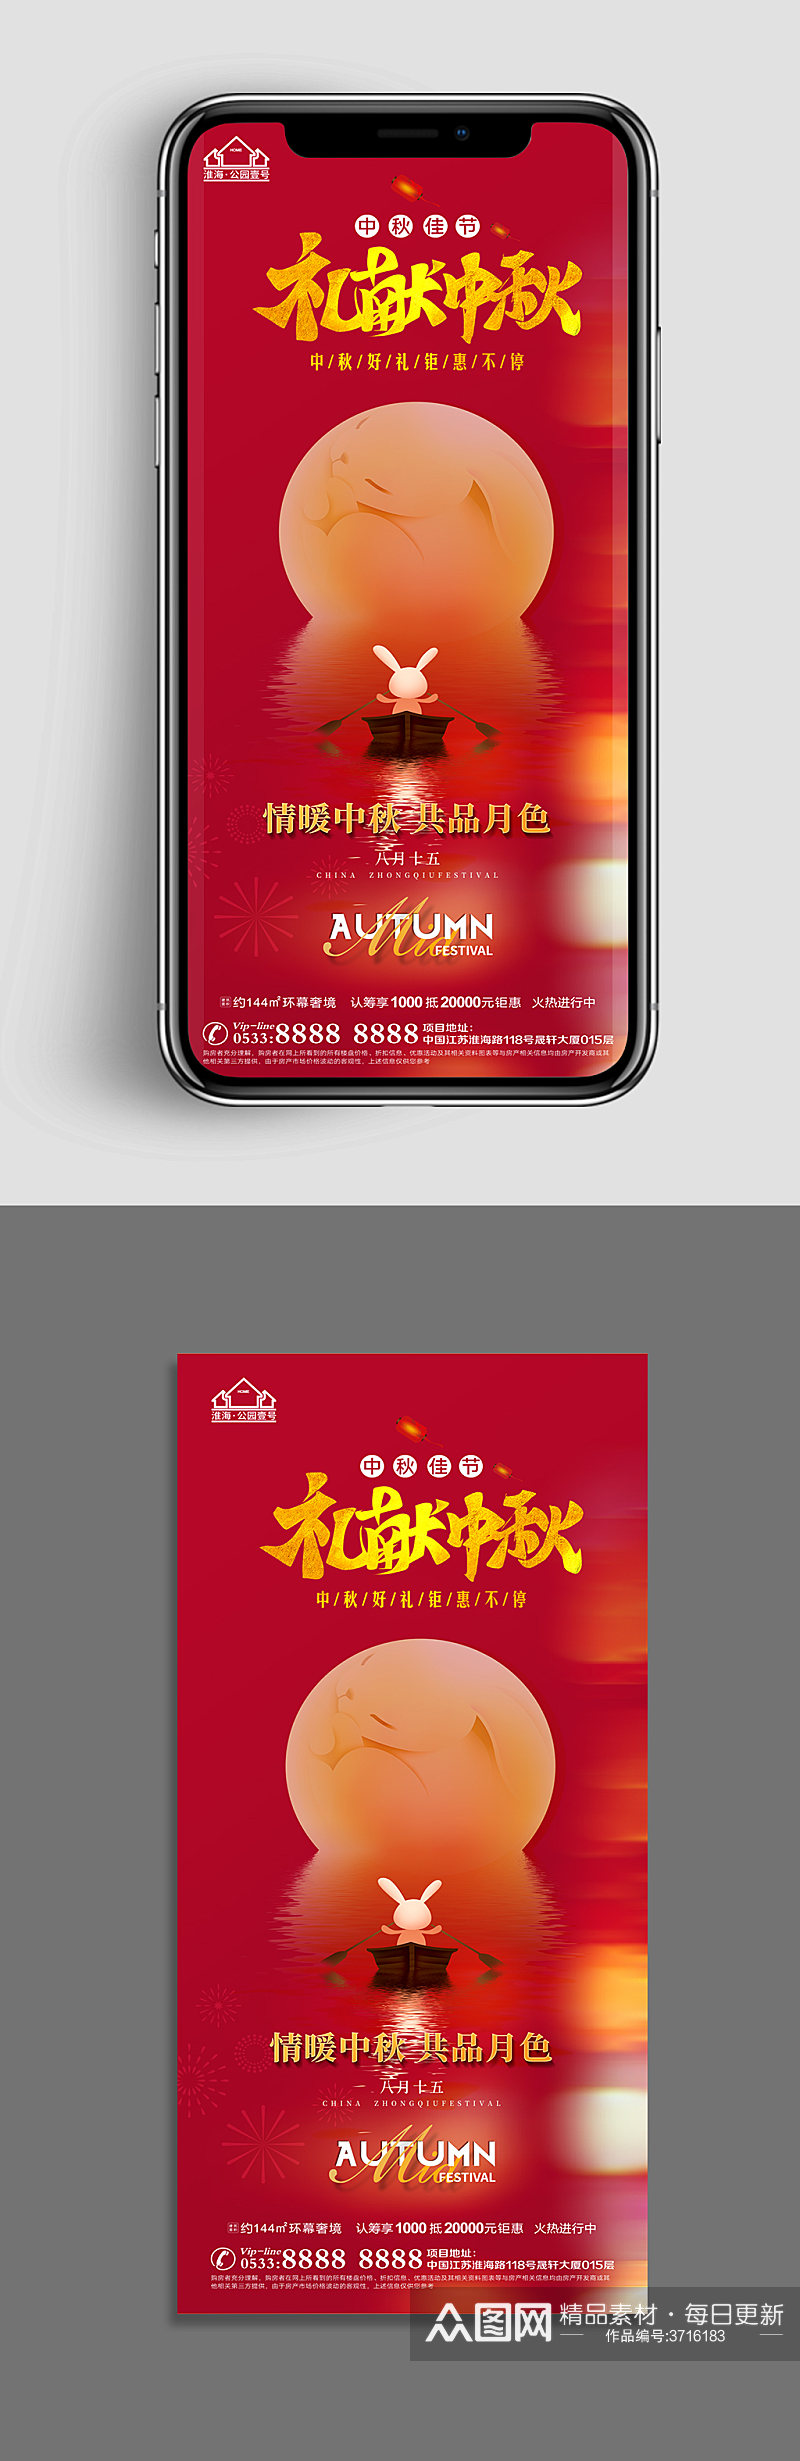 红色地产中秋节节日海报素材